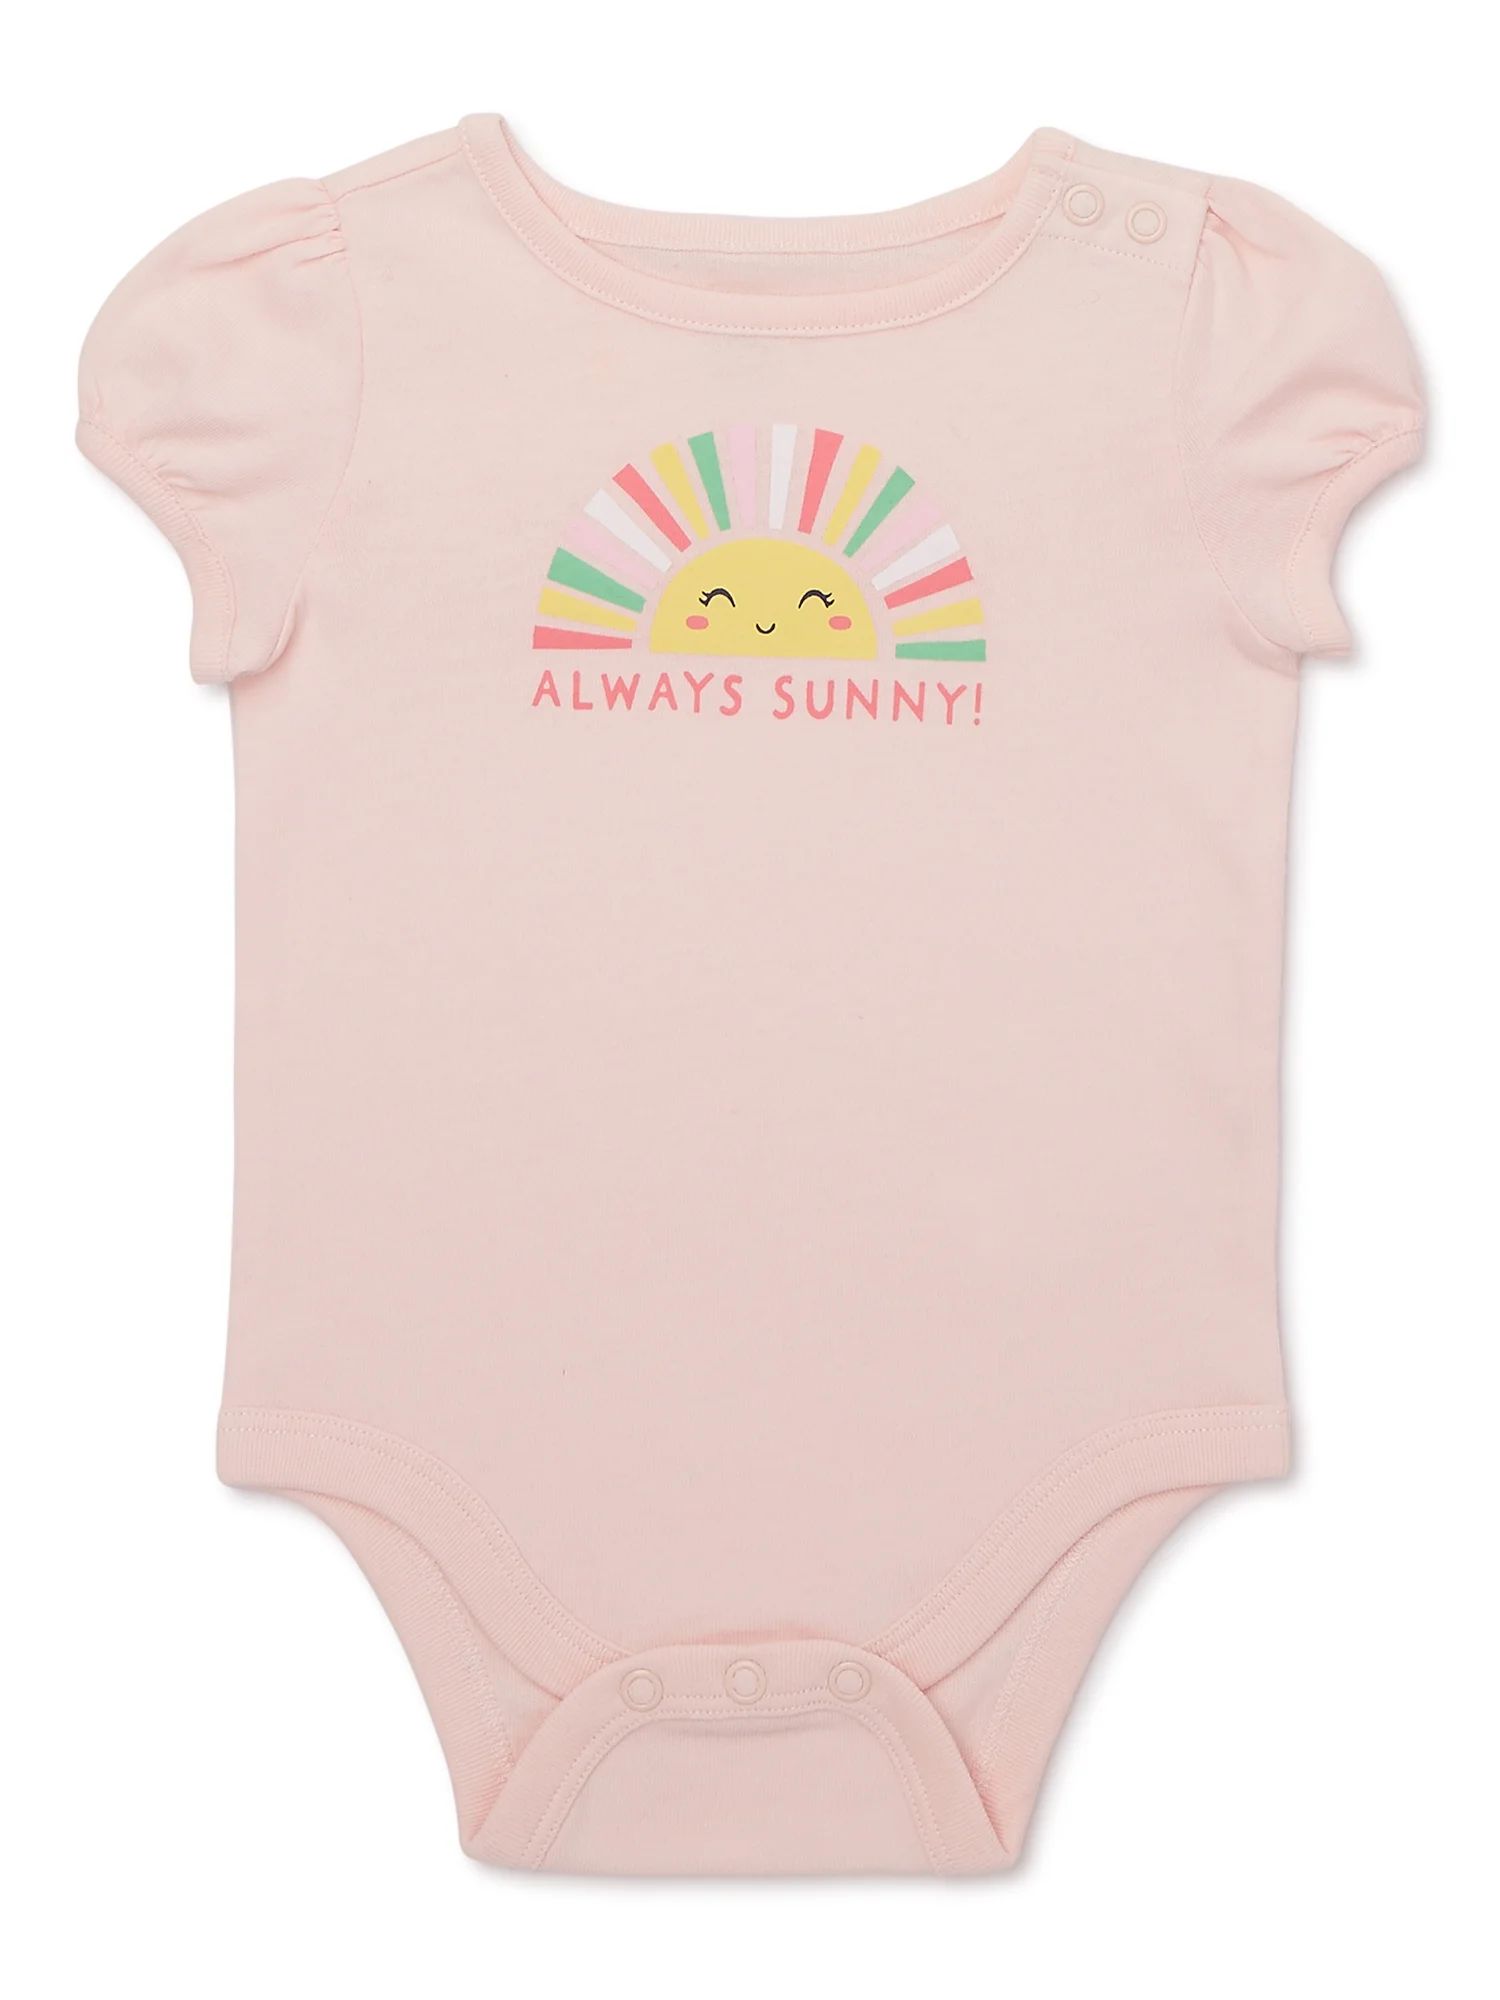 Garanimals Baby Girl Puff Sleeve Graphic Bodysuit, Sizes 0-24 Months | Walmart (US)